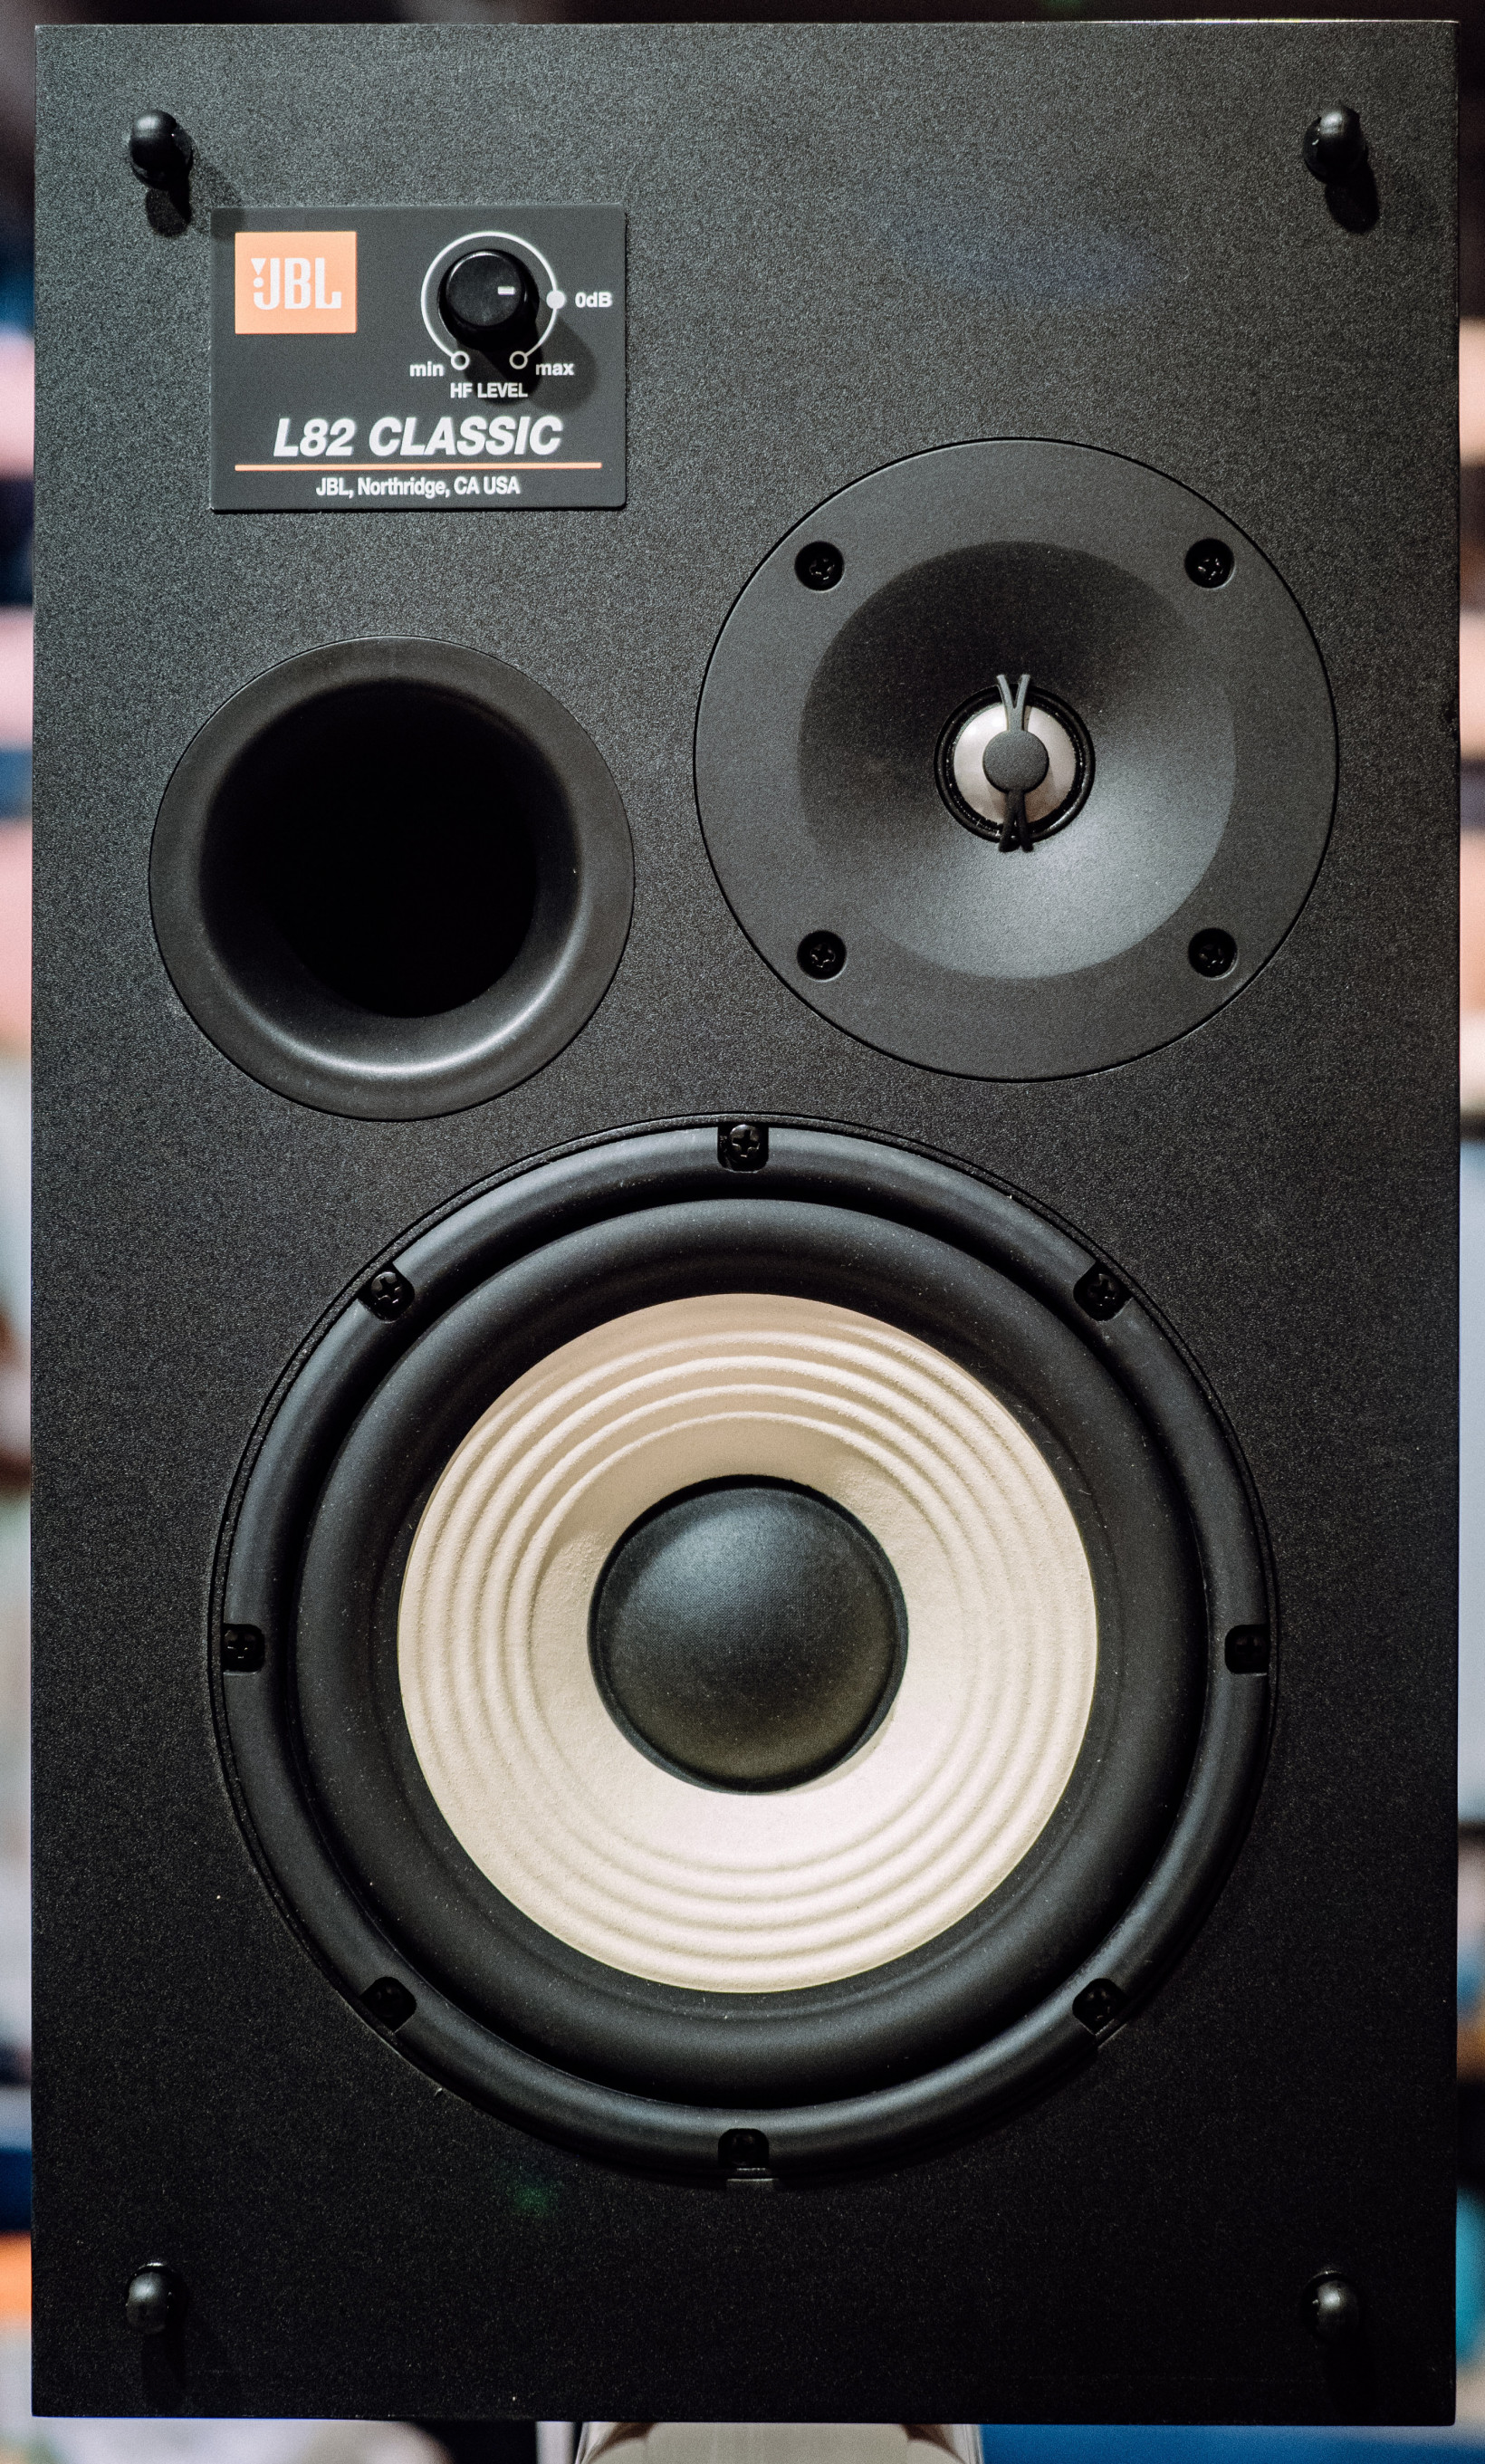 JBL review: This speaker modern acoustics